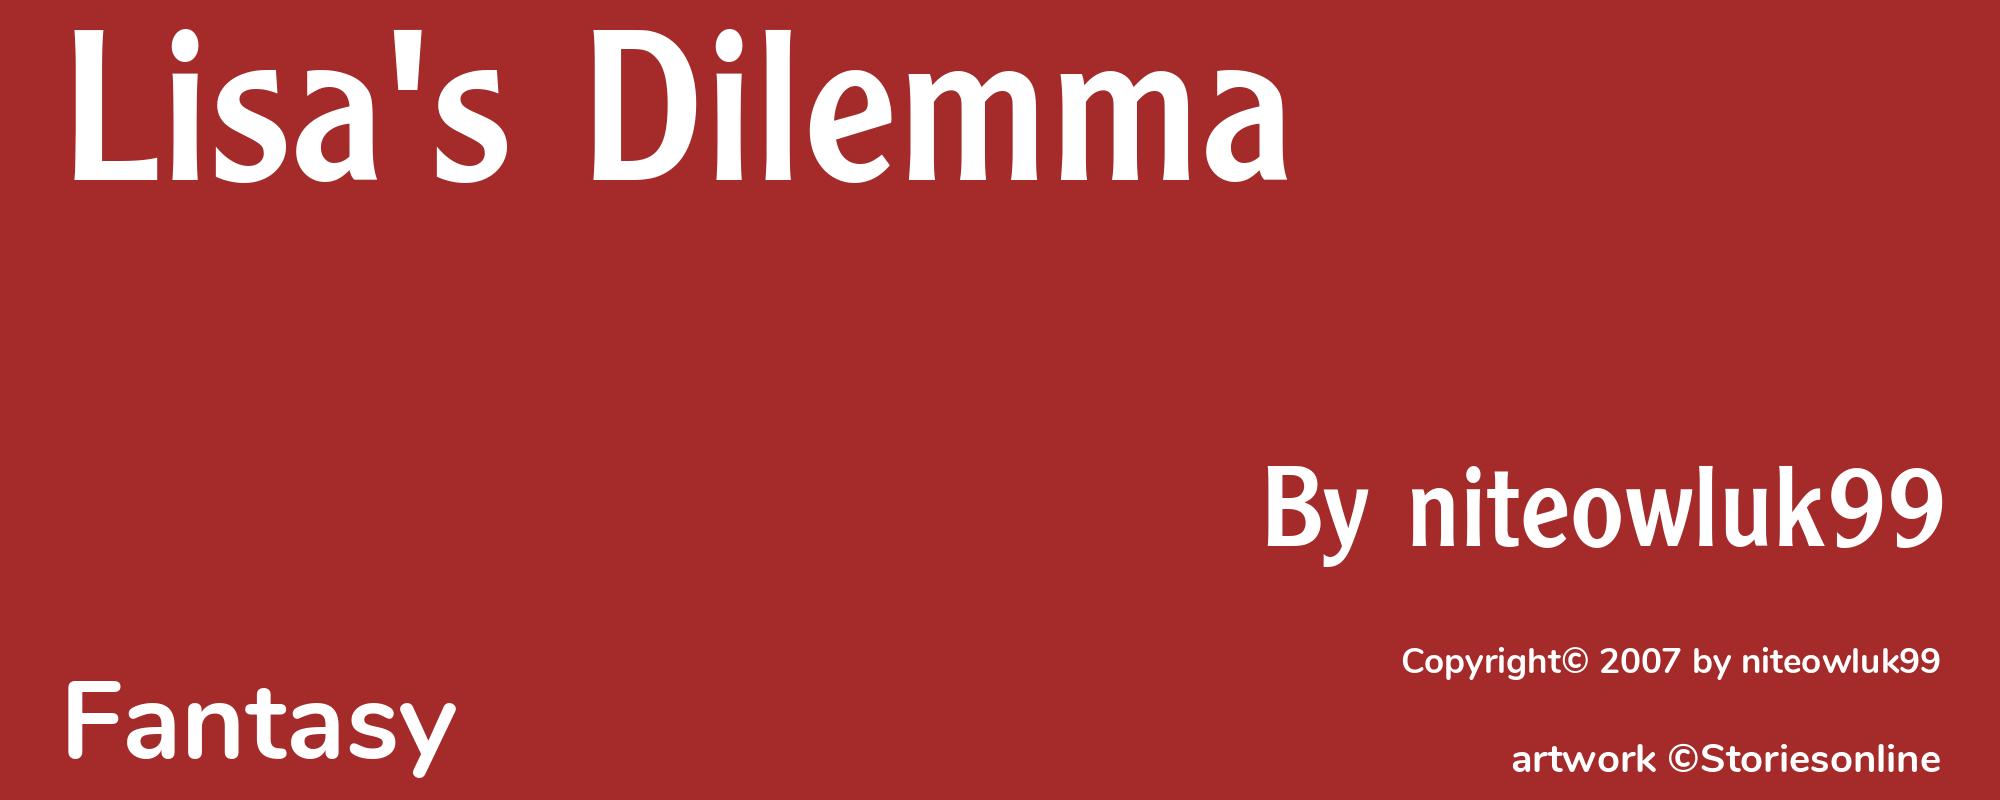 Lisa's Dilemma - Cover